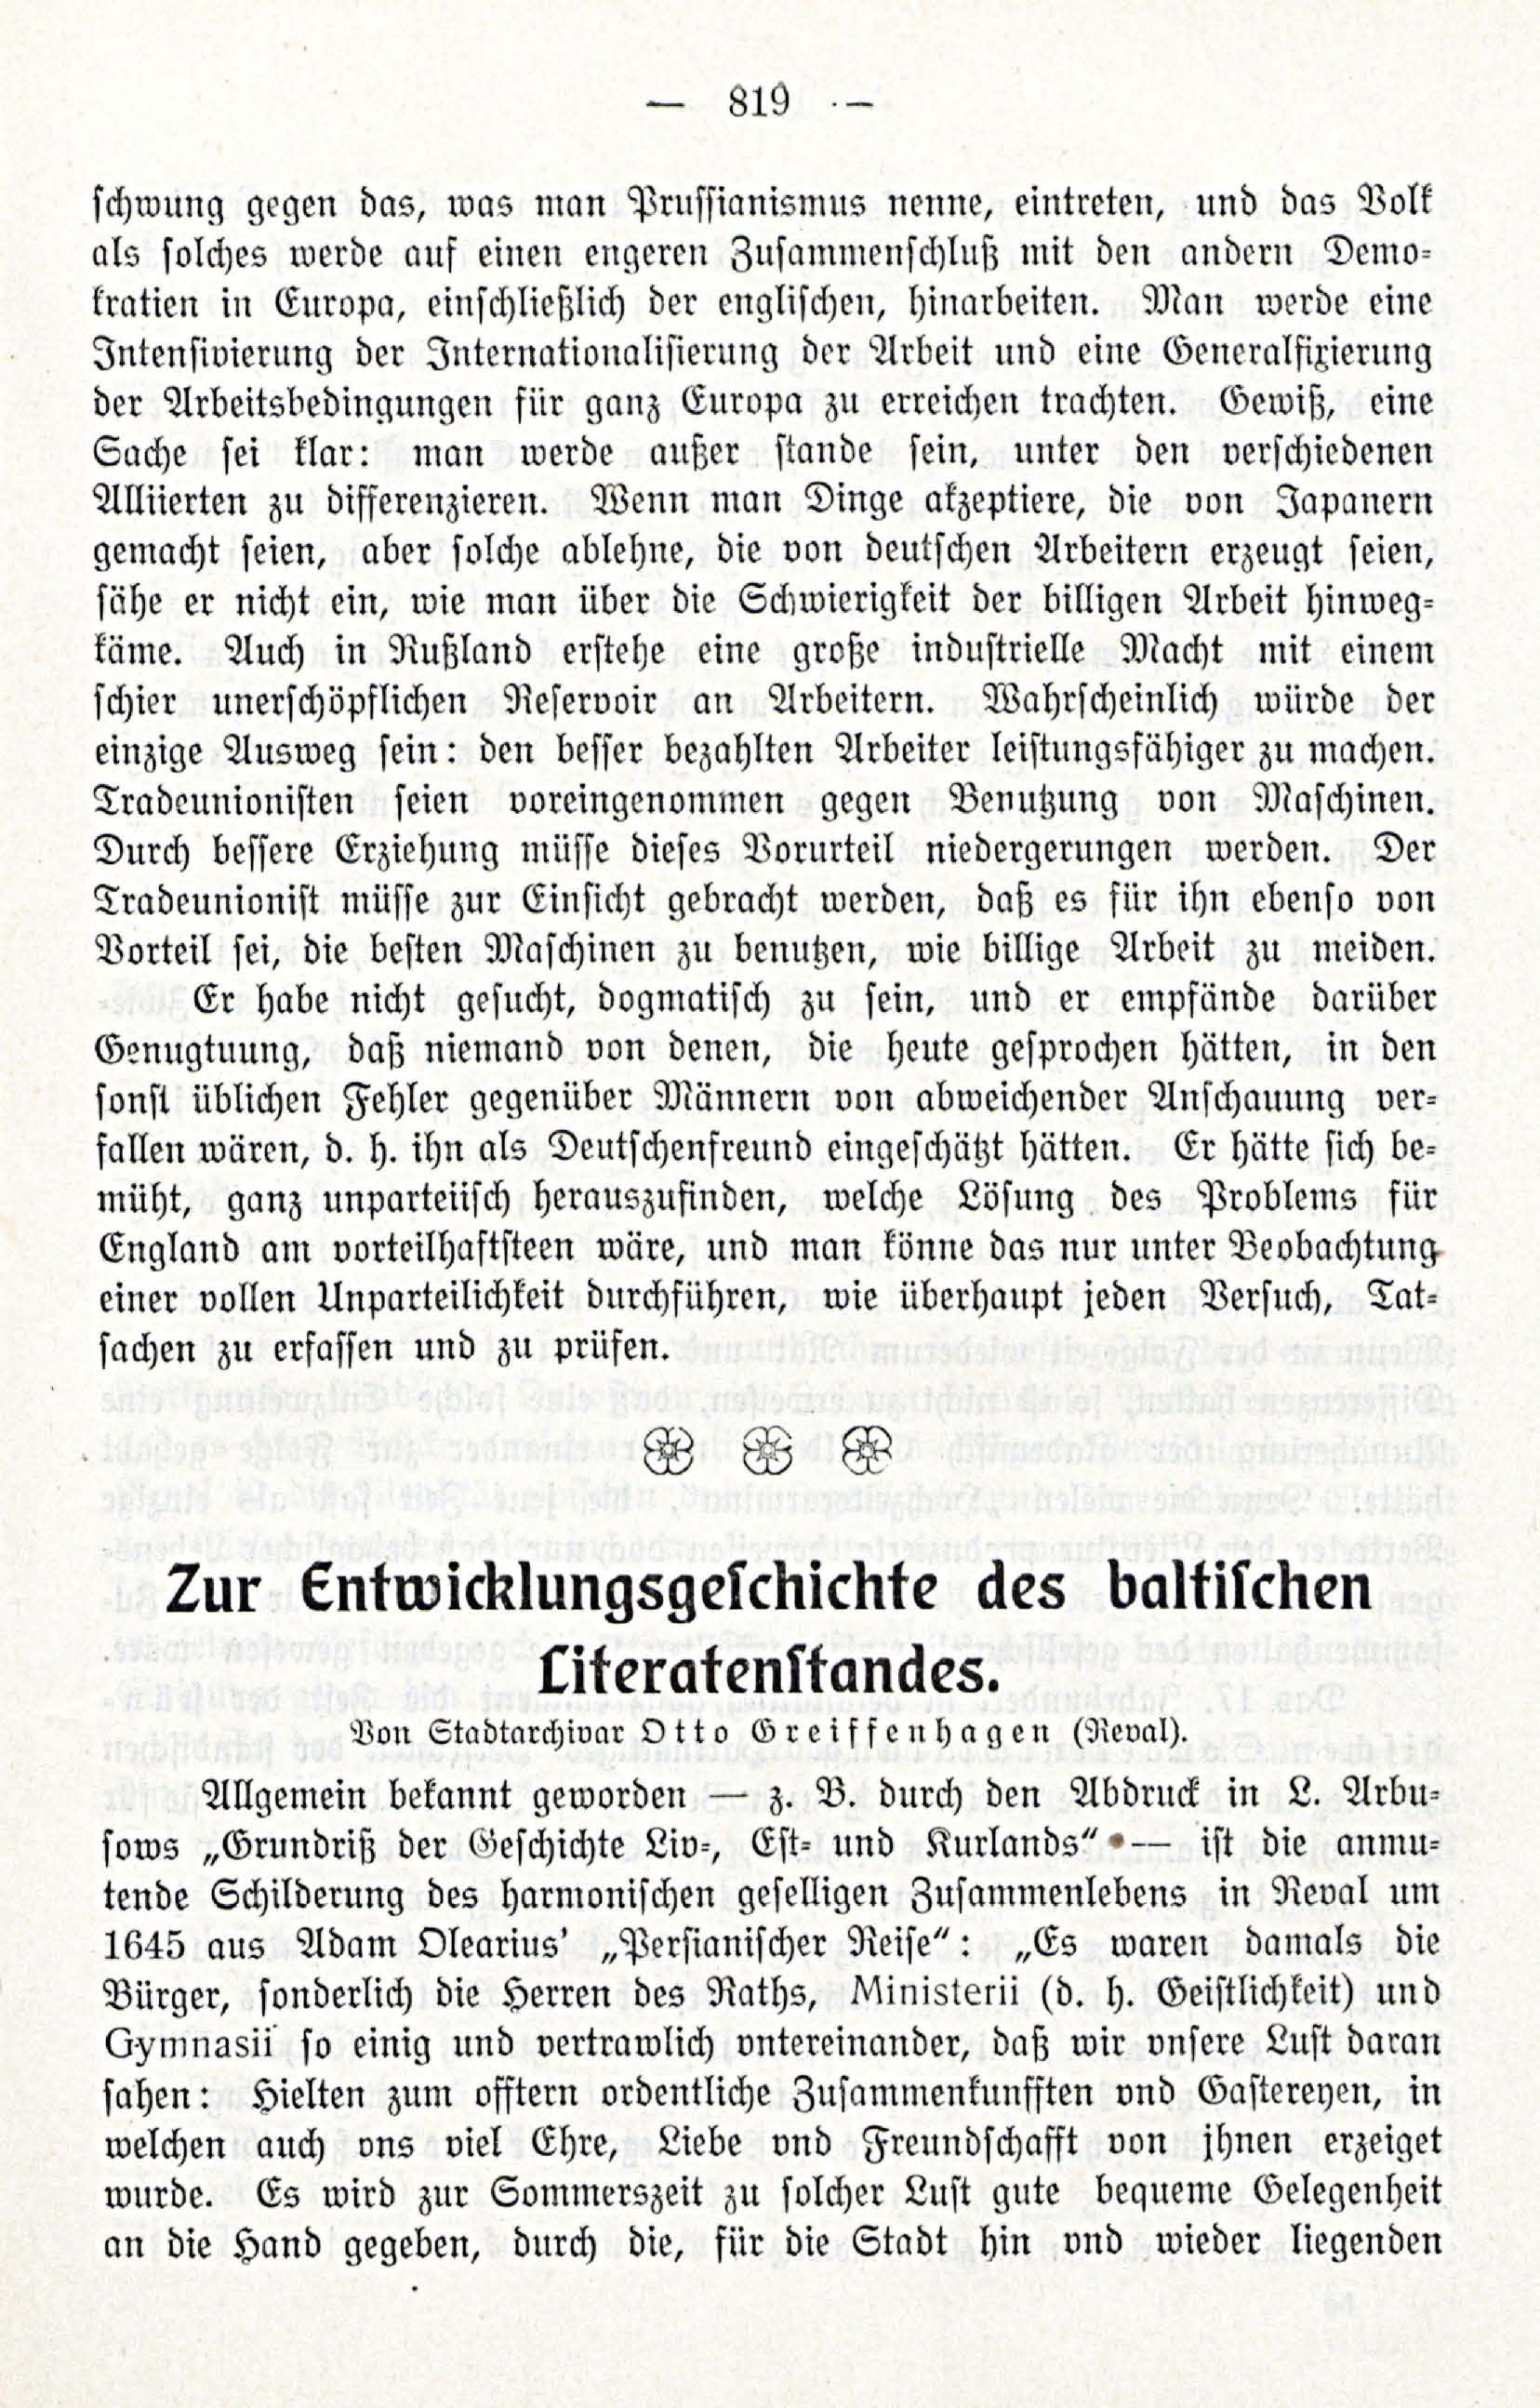 Zur Entwicklungesgescshichte des baltischen Literatenstandes (1914) | 1. (819) Основной текст